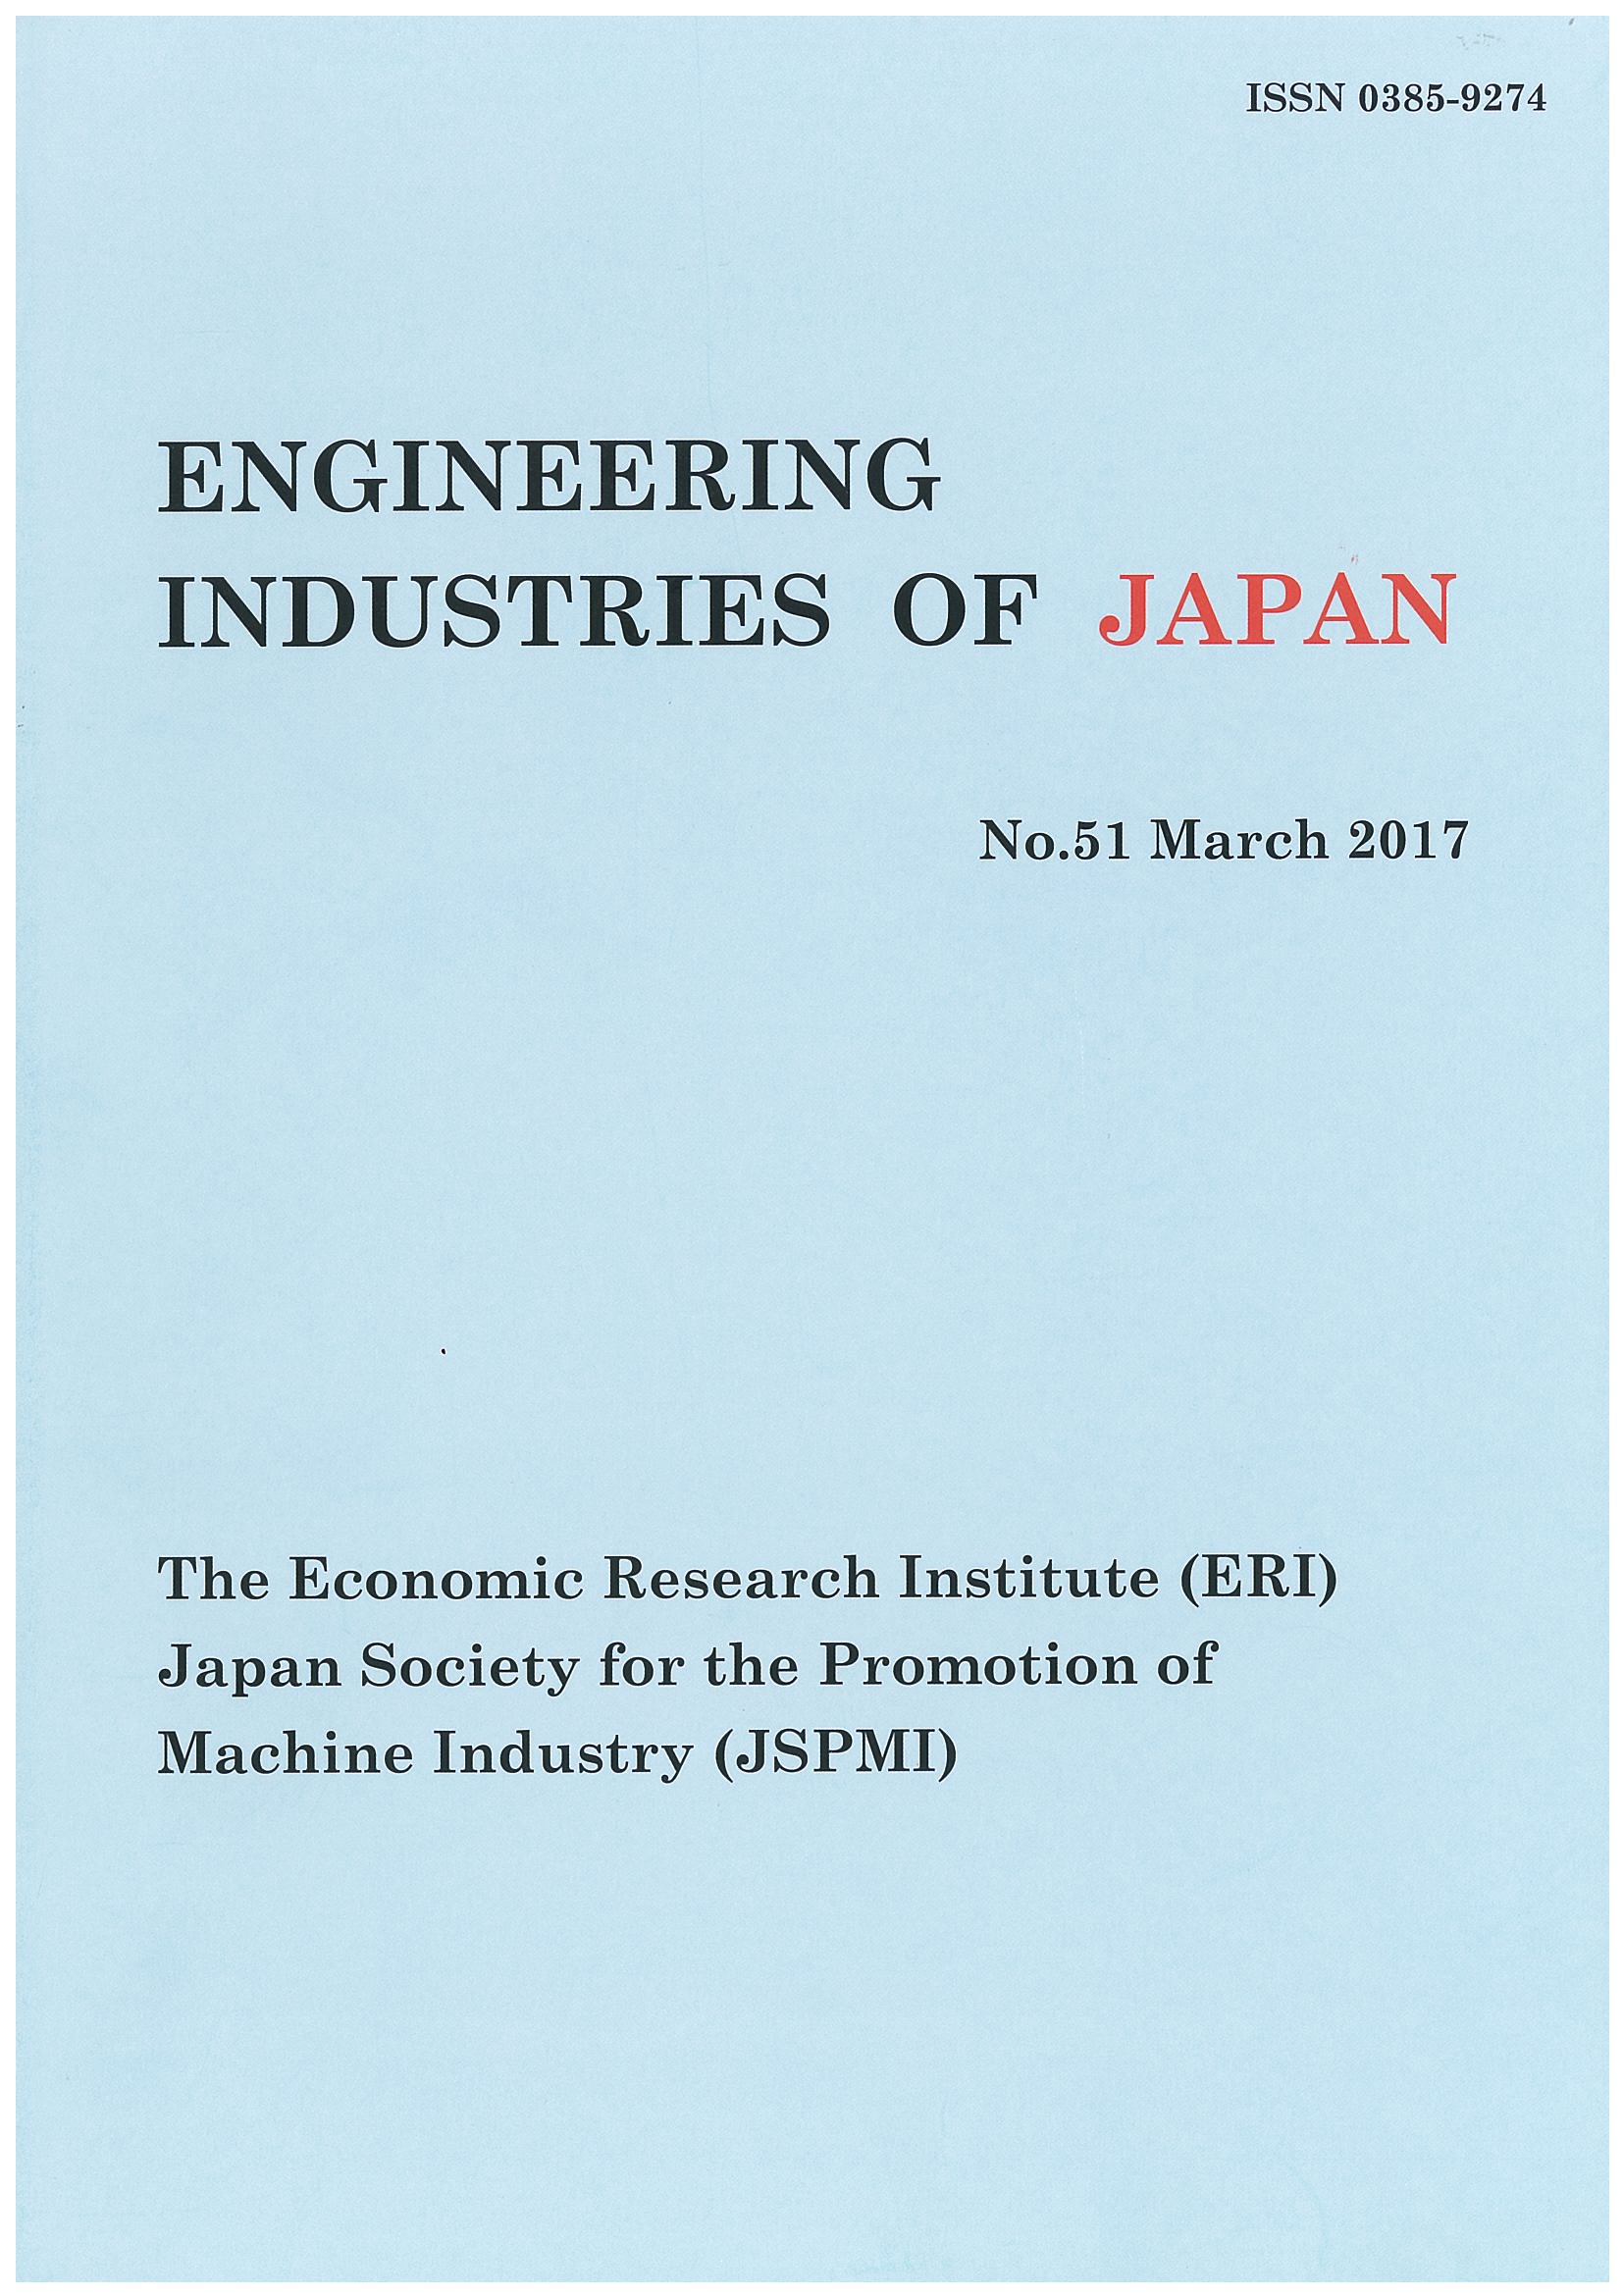 Engineering Industries of Japan No.51(March 2017)0001.jpg